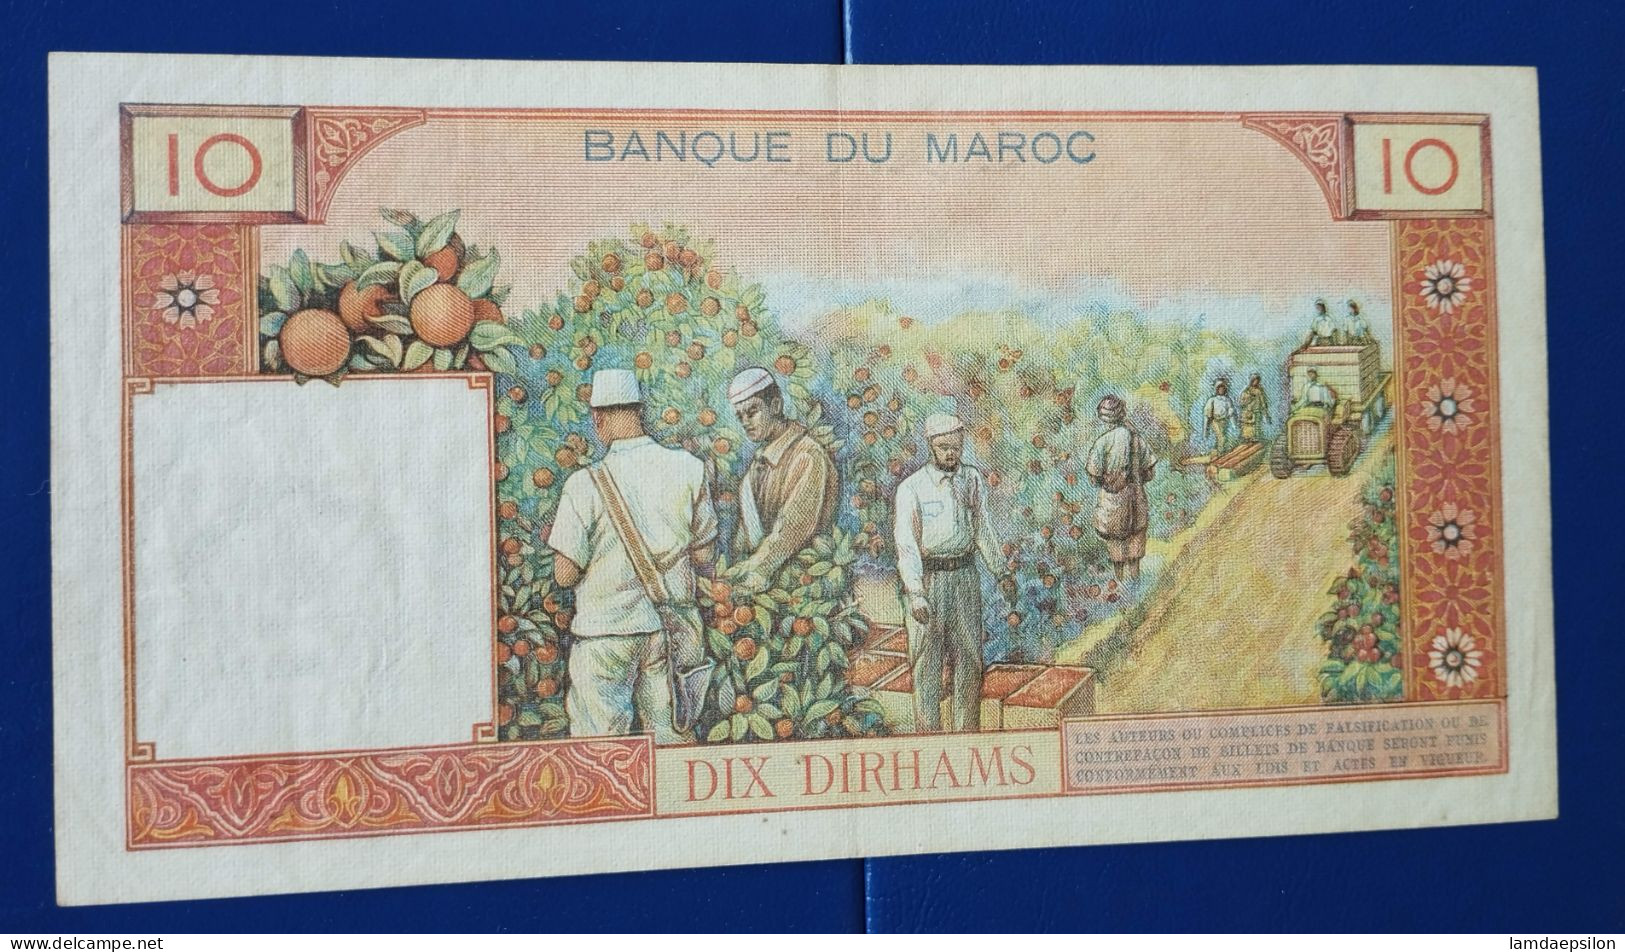 MAROC MOROCCO MARRUECOS MAROKKO BANQUE DU MAROC  10 DIRHAMS 1965 - Morocco